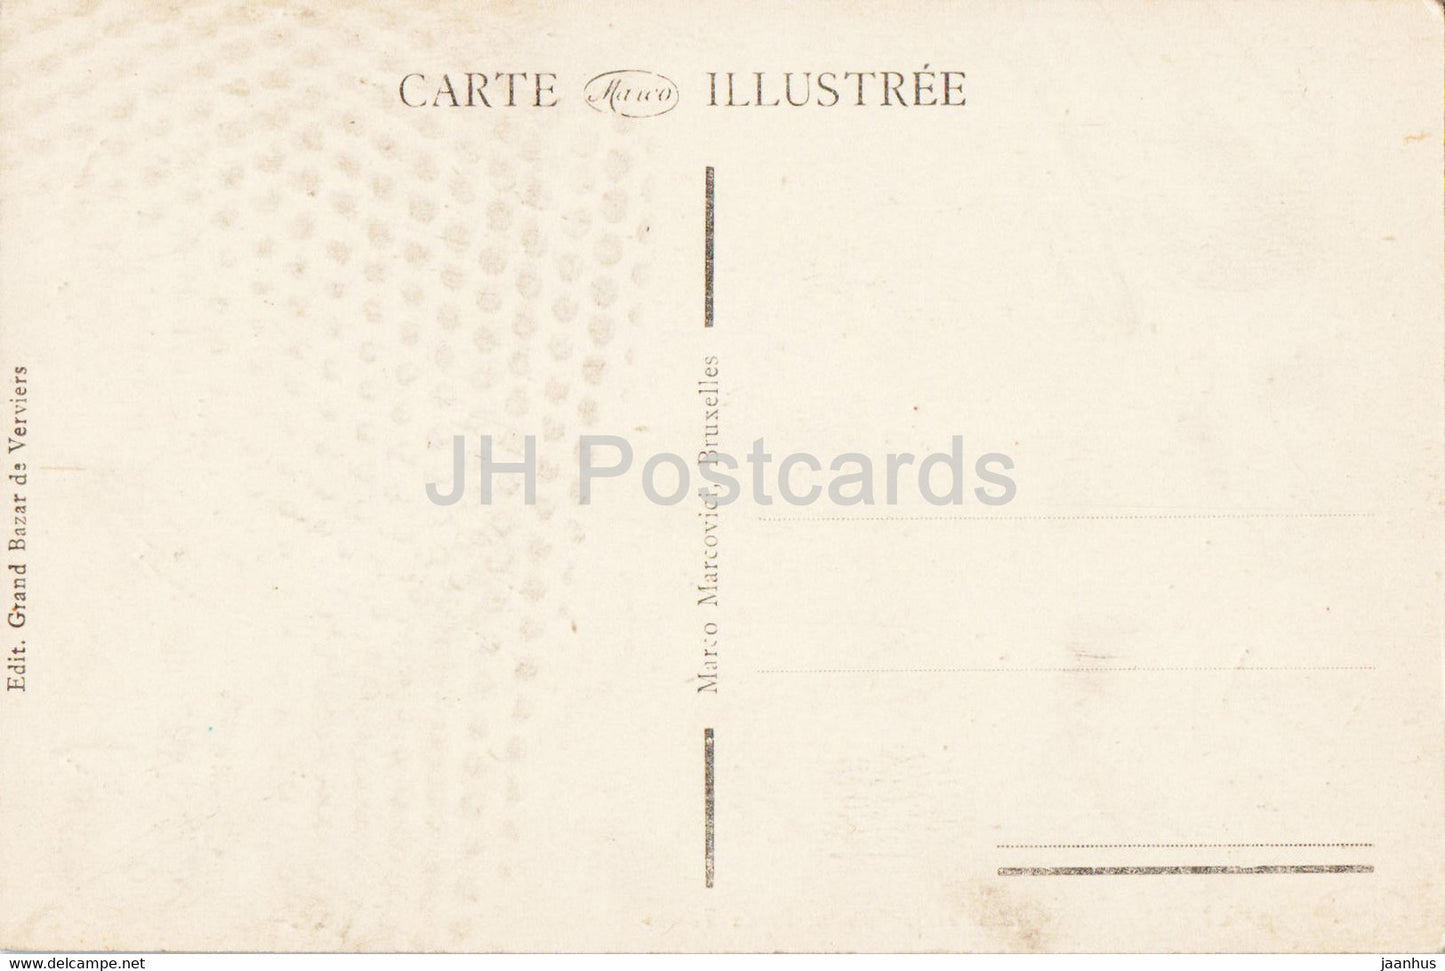 Verviers - Place et Monument Vieux Temps - 10 - alte Postkarte - Belgien - unbenutzt